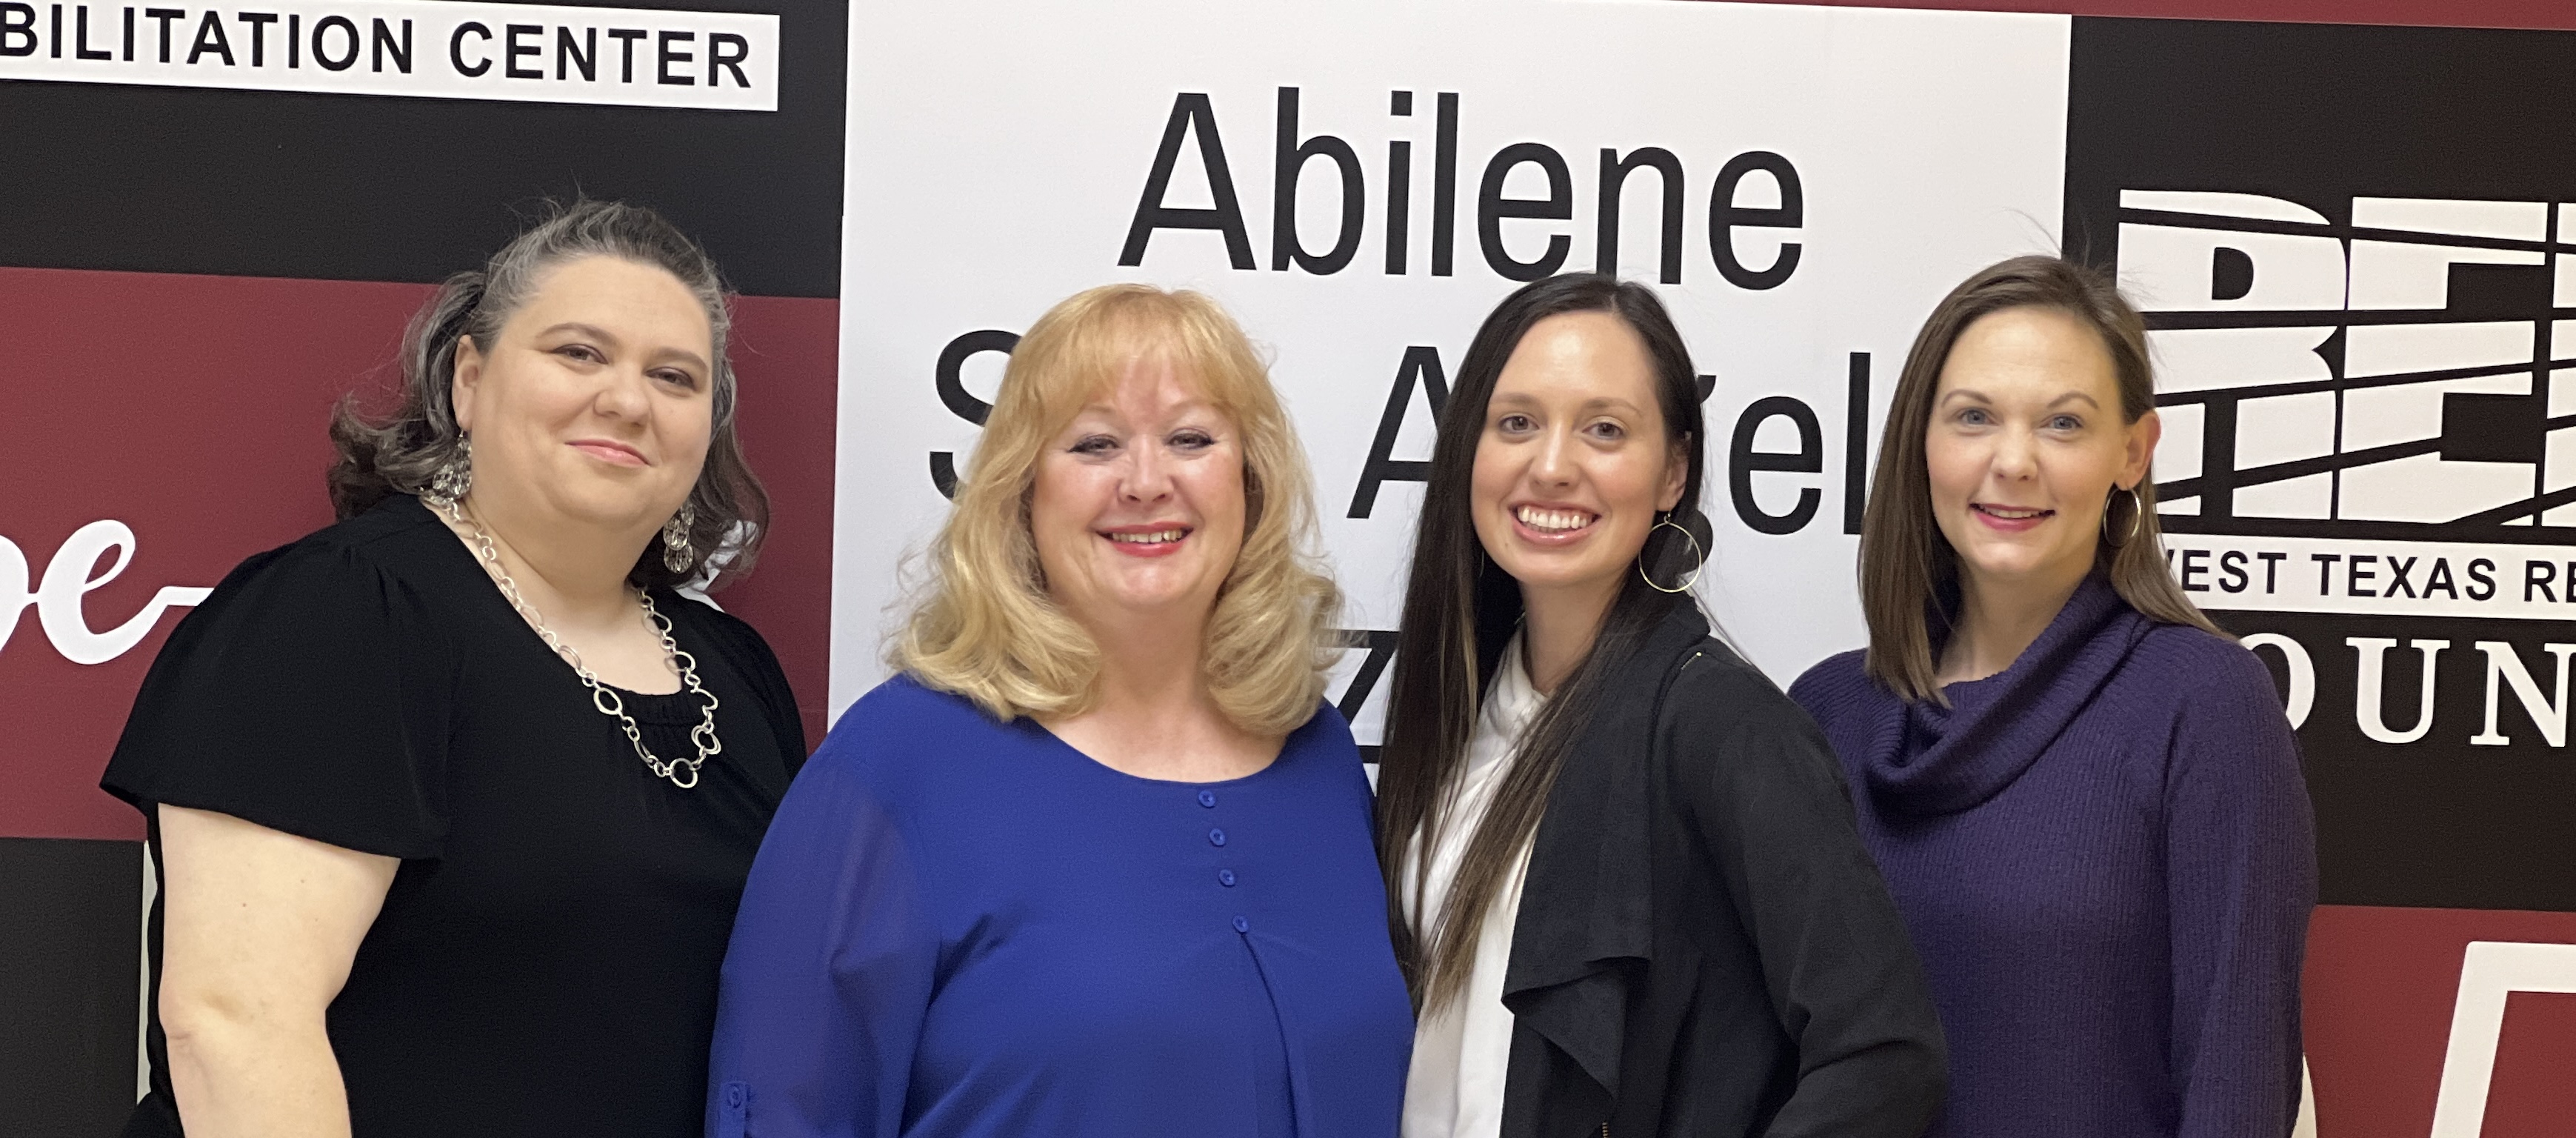 Meet our Team - Abilene